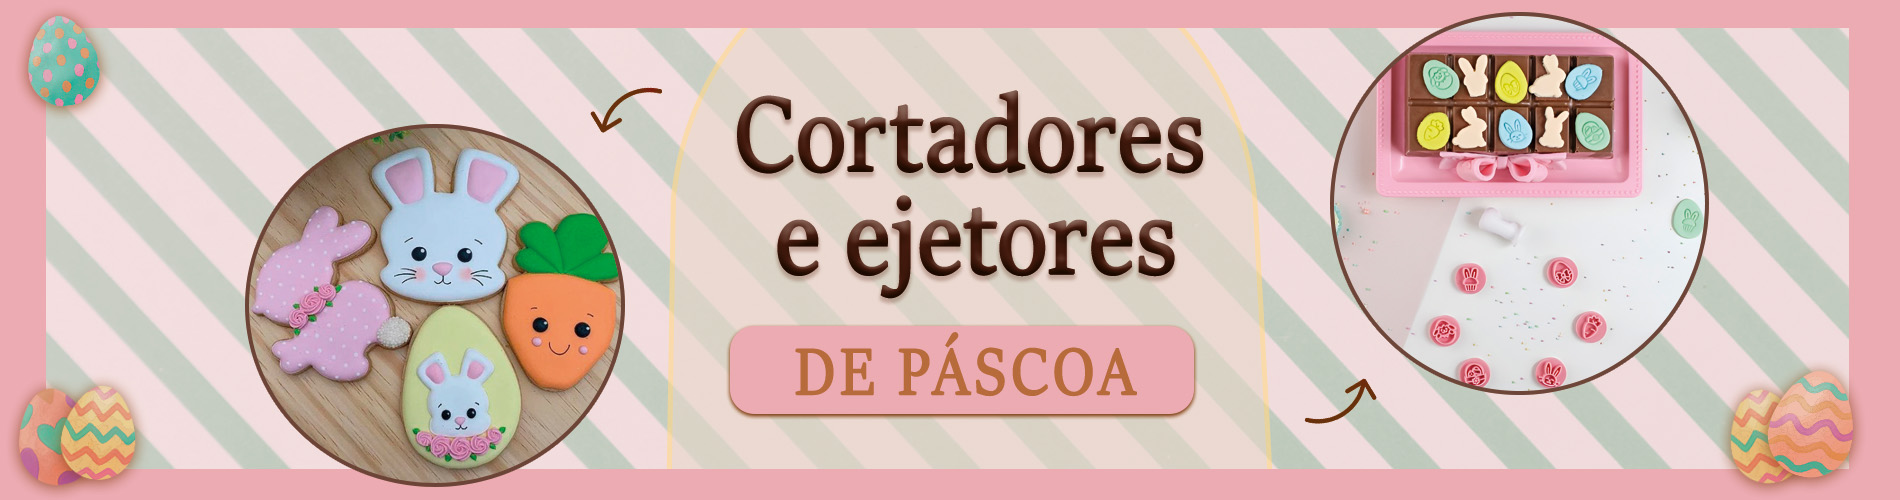 Banner Categoria páscoa Cortadores e Ejetores